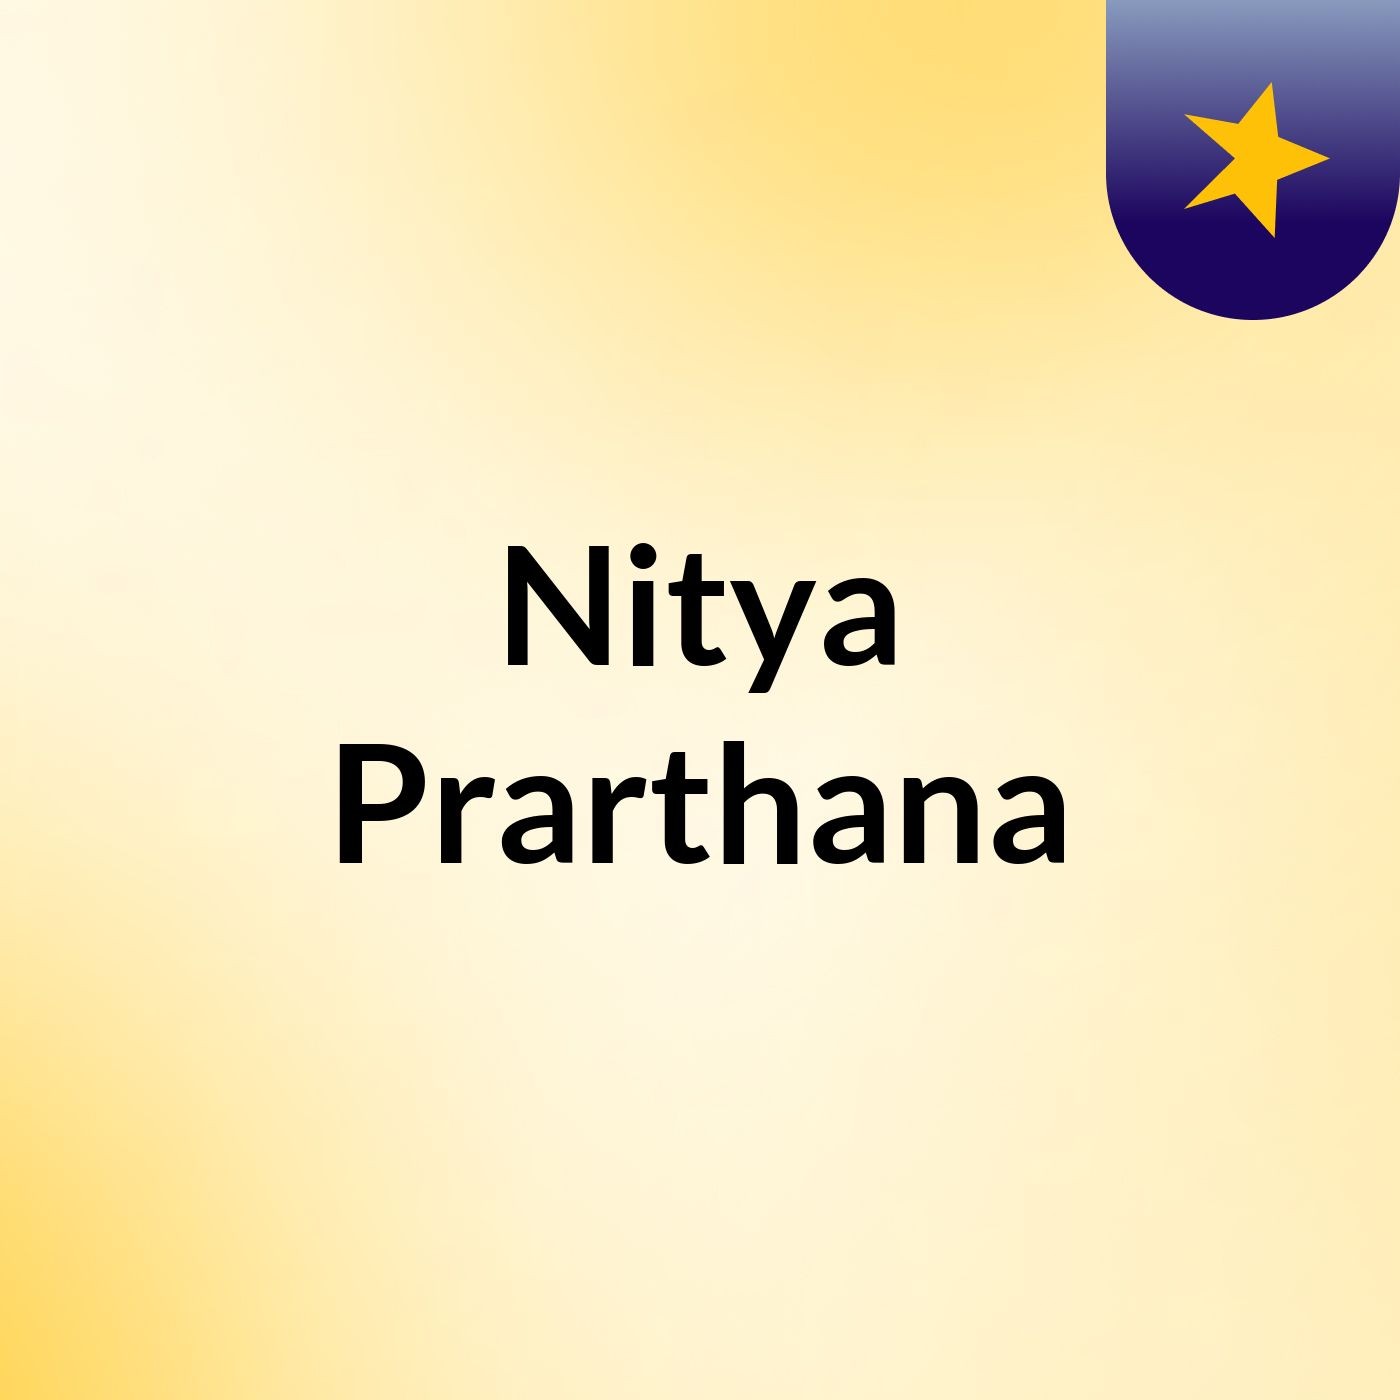 Nitya Prarthana